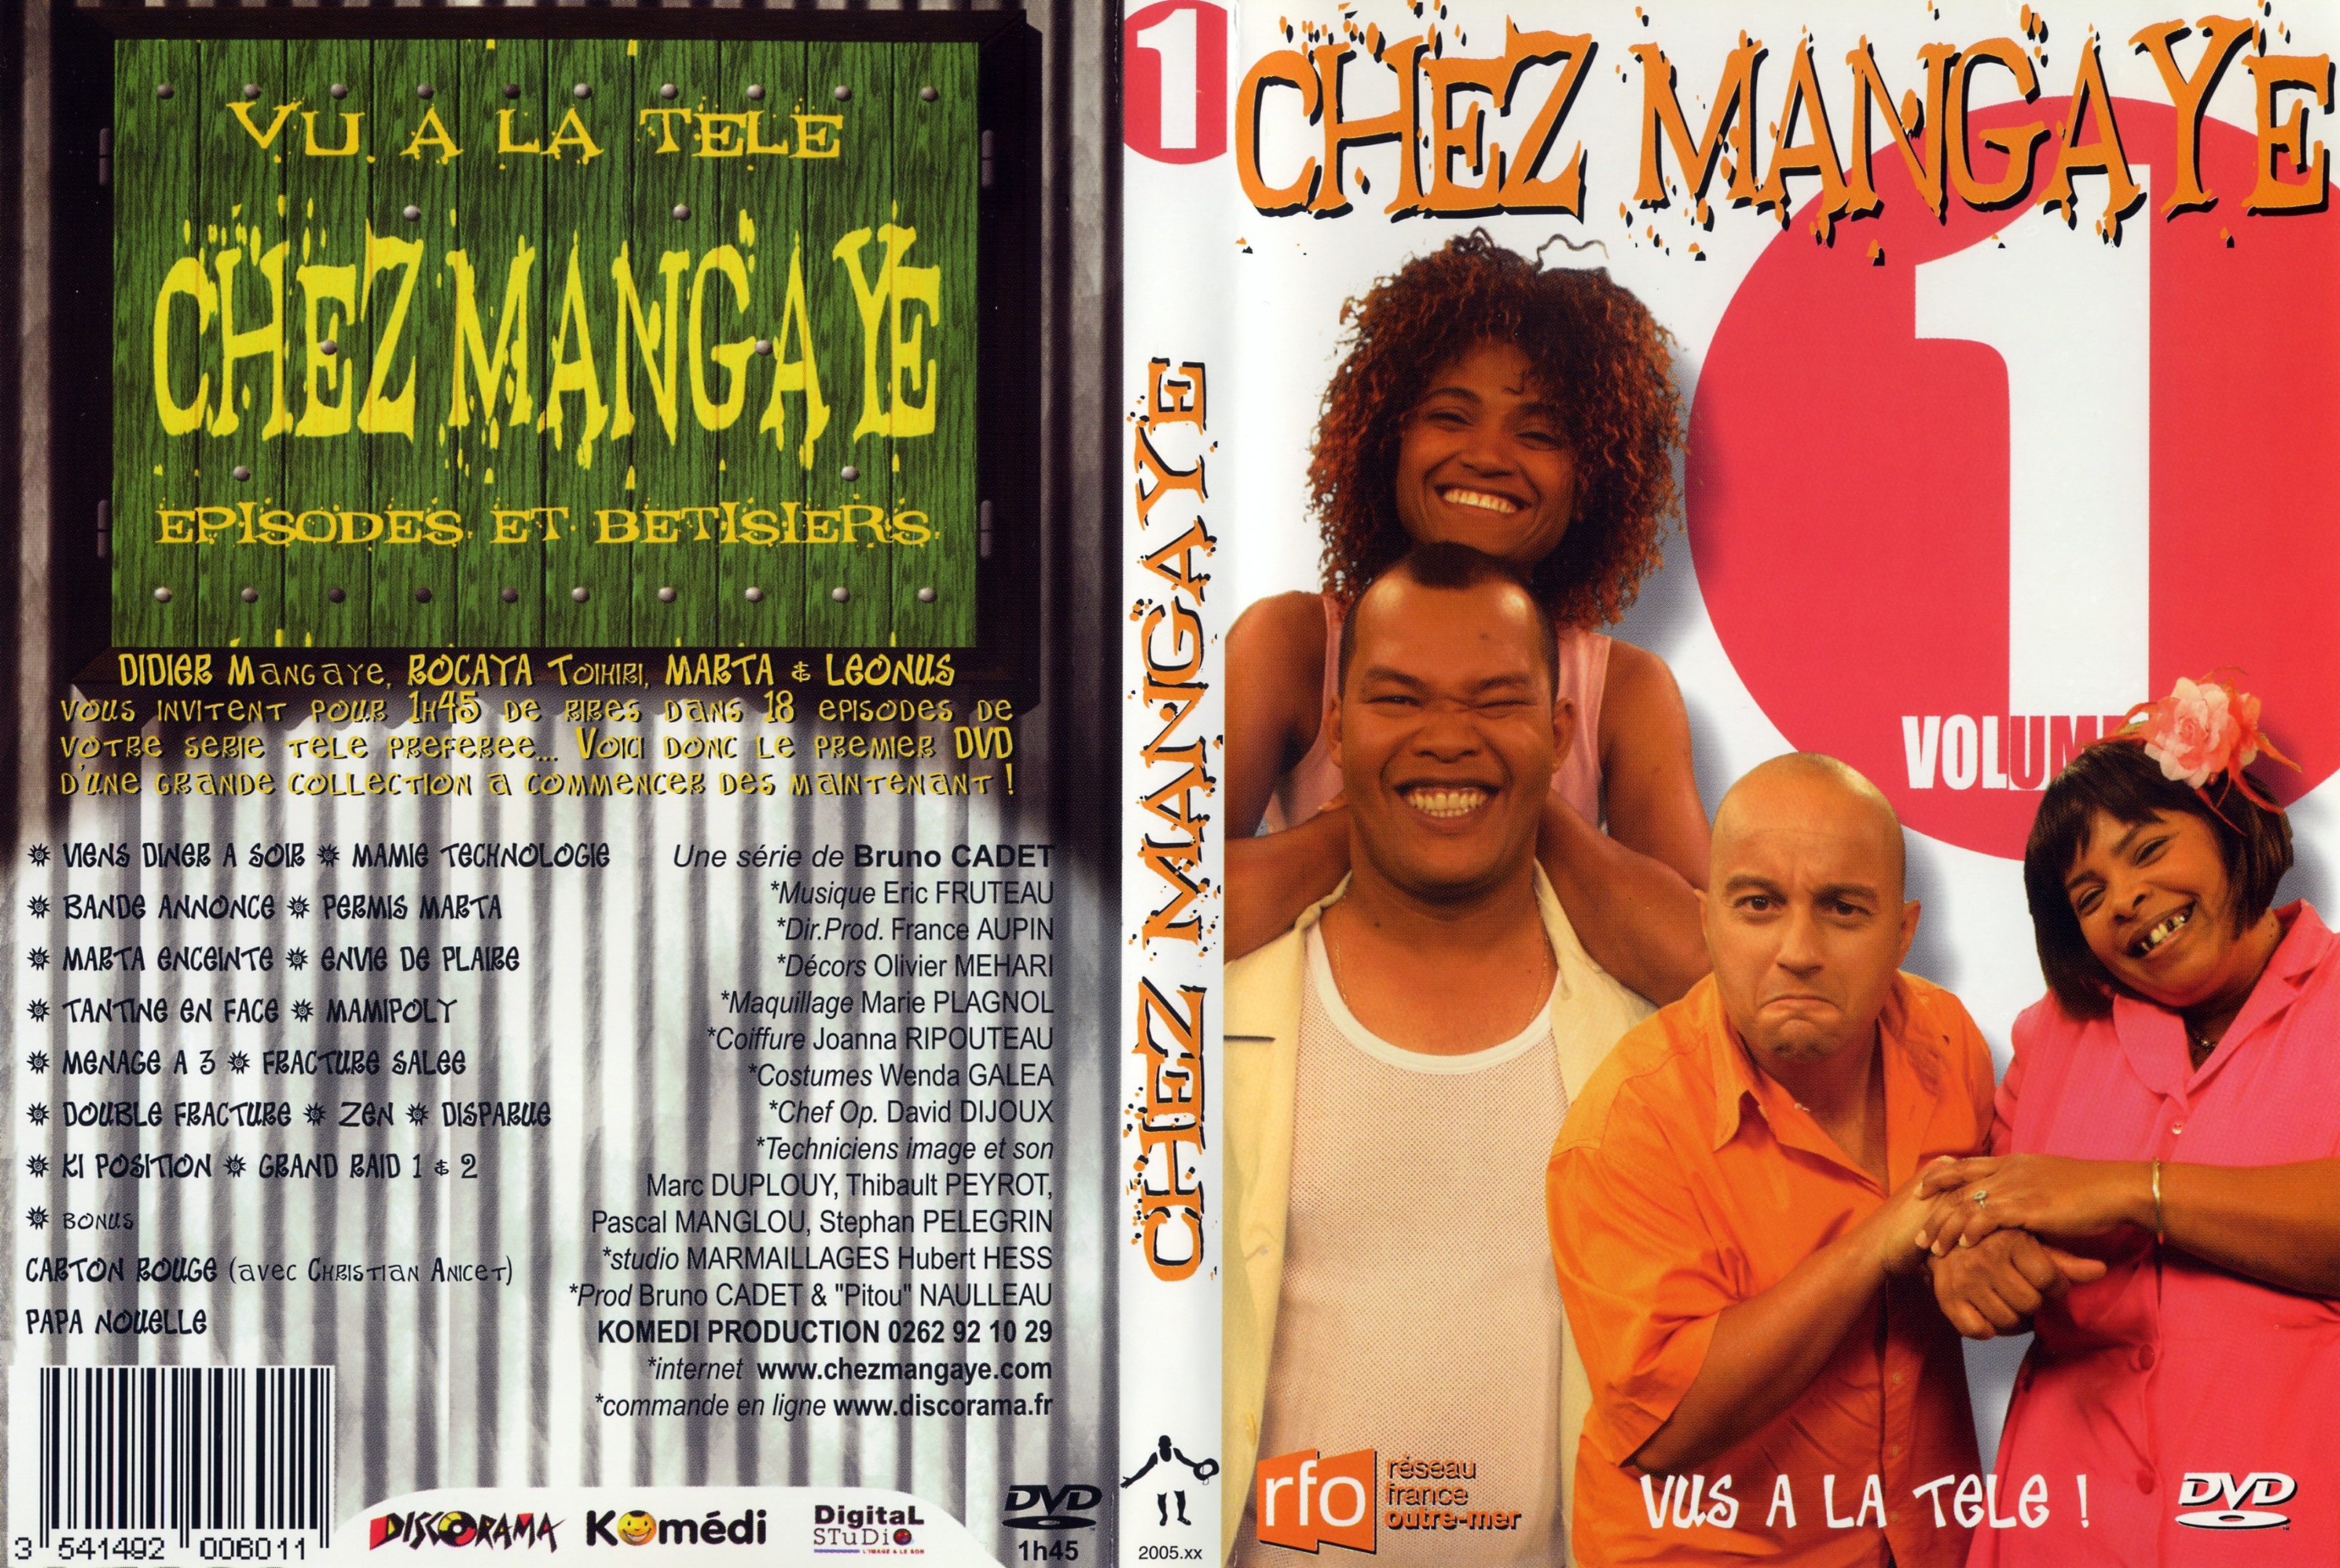 Jaquette DVD Chez mangaye vol 1